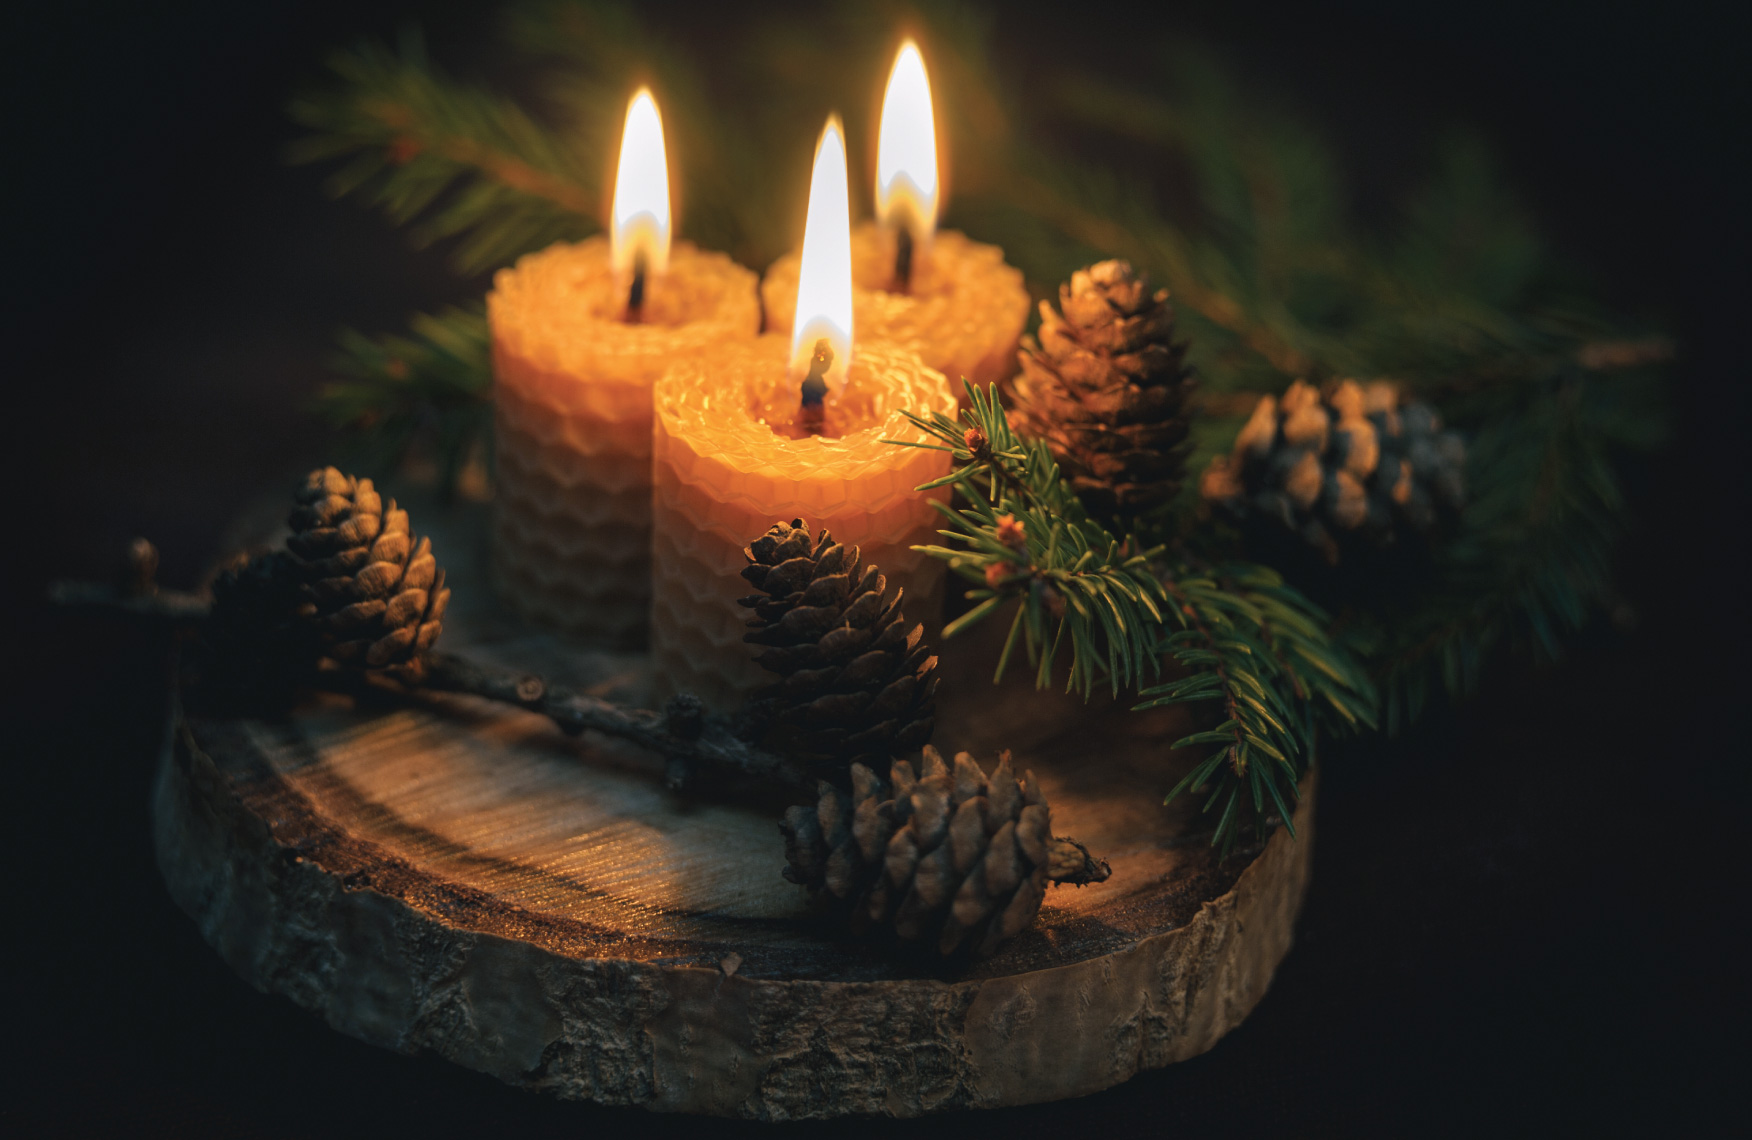 Des bougies naturelles pour un Noël féérique